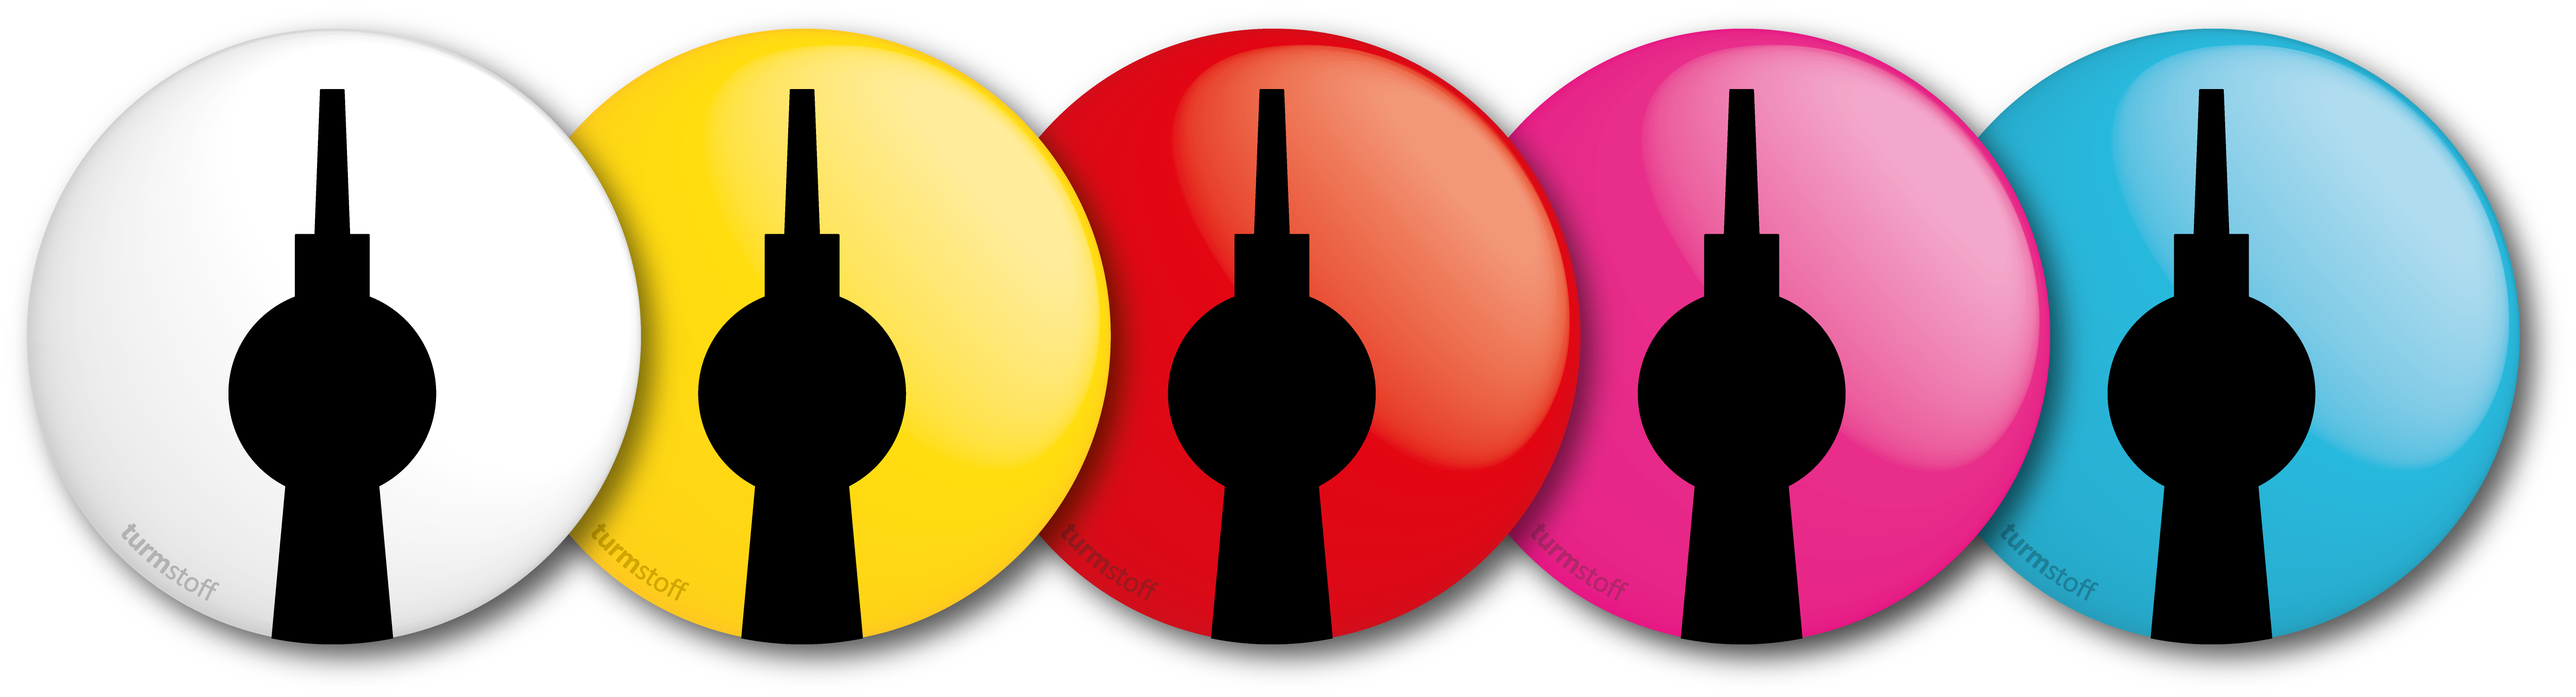 fernsehturm-berlin-alex-button-anstecker-sortiment